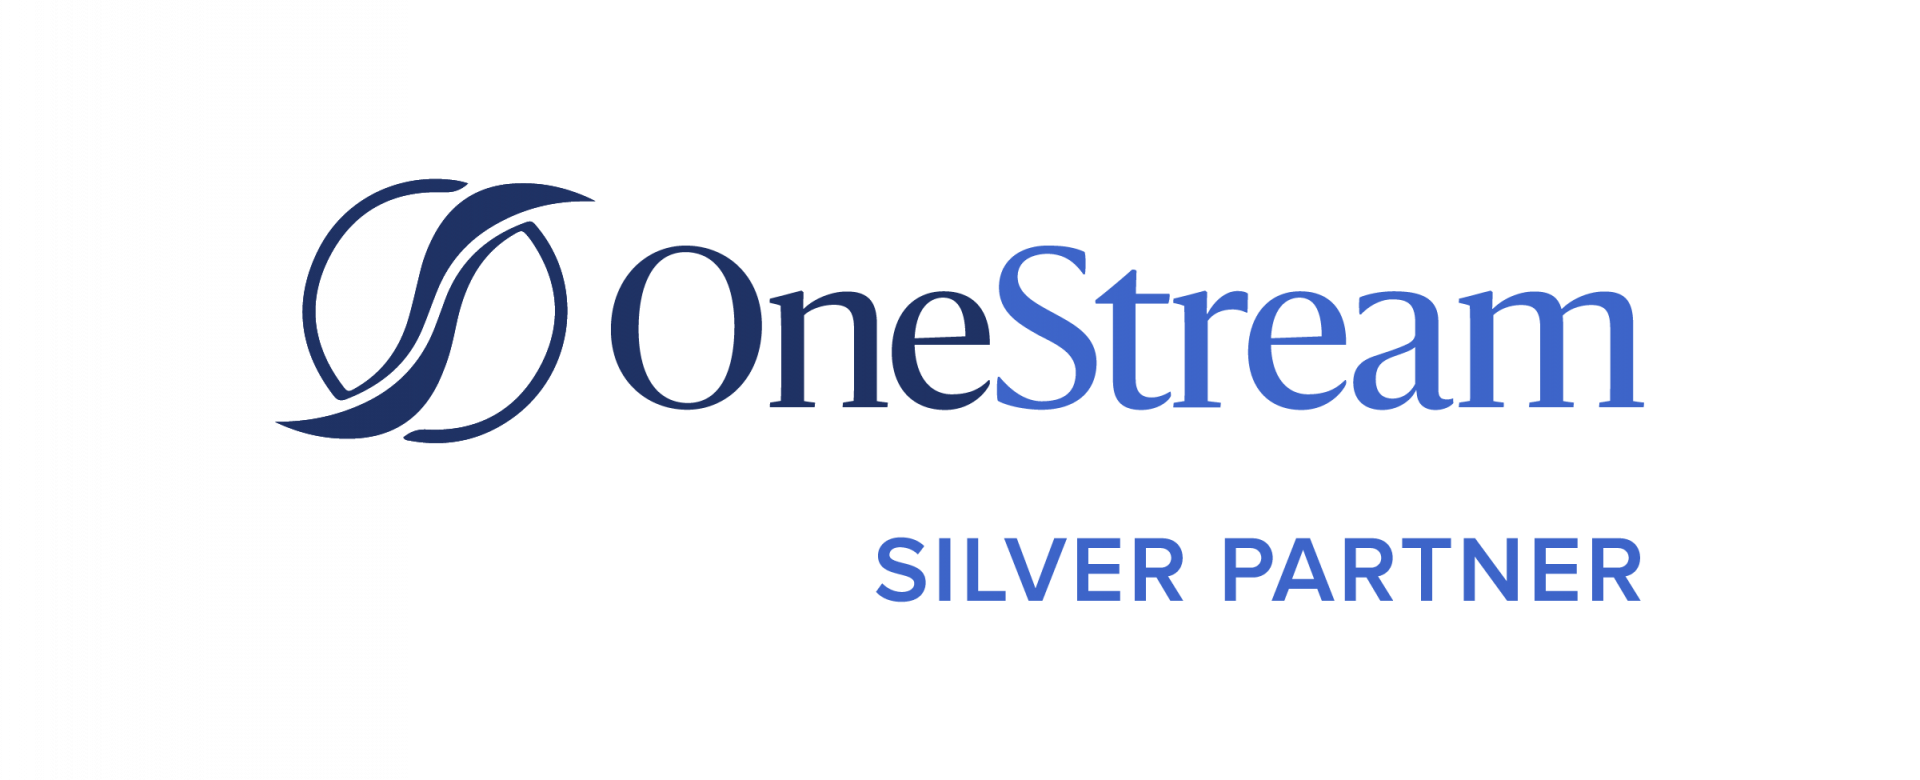 OneStream Silver Partner